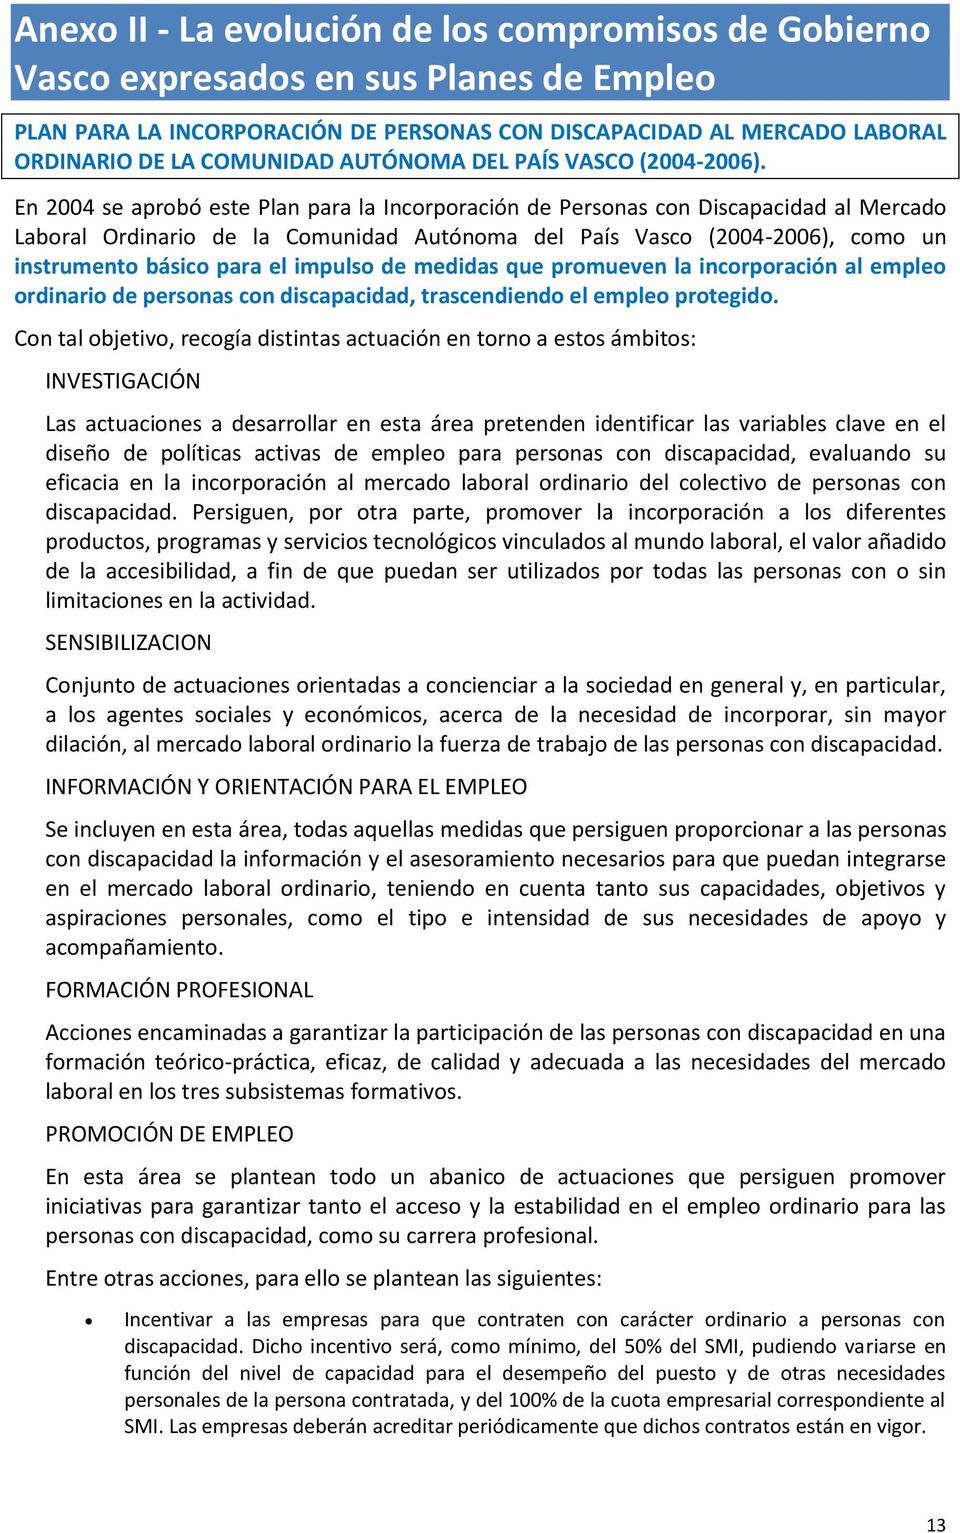 En 2004 se aprobó este Plan para la Incorporación de Personas con Discapacidad al Mercado Laboral Ordinario de la Comunidad Autónoma del País Vasco (2004-2006), como un instrumento básico para el